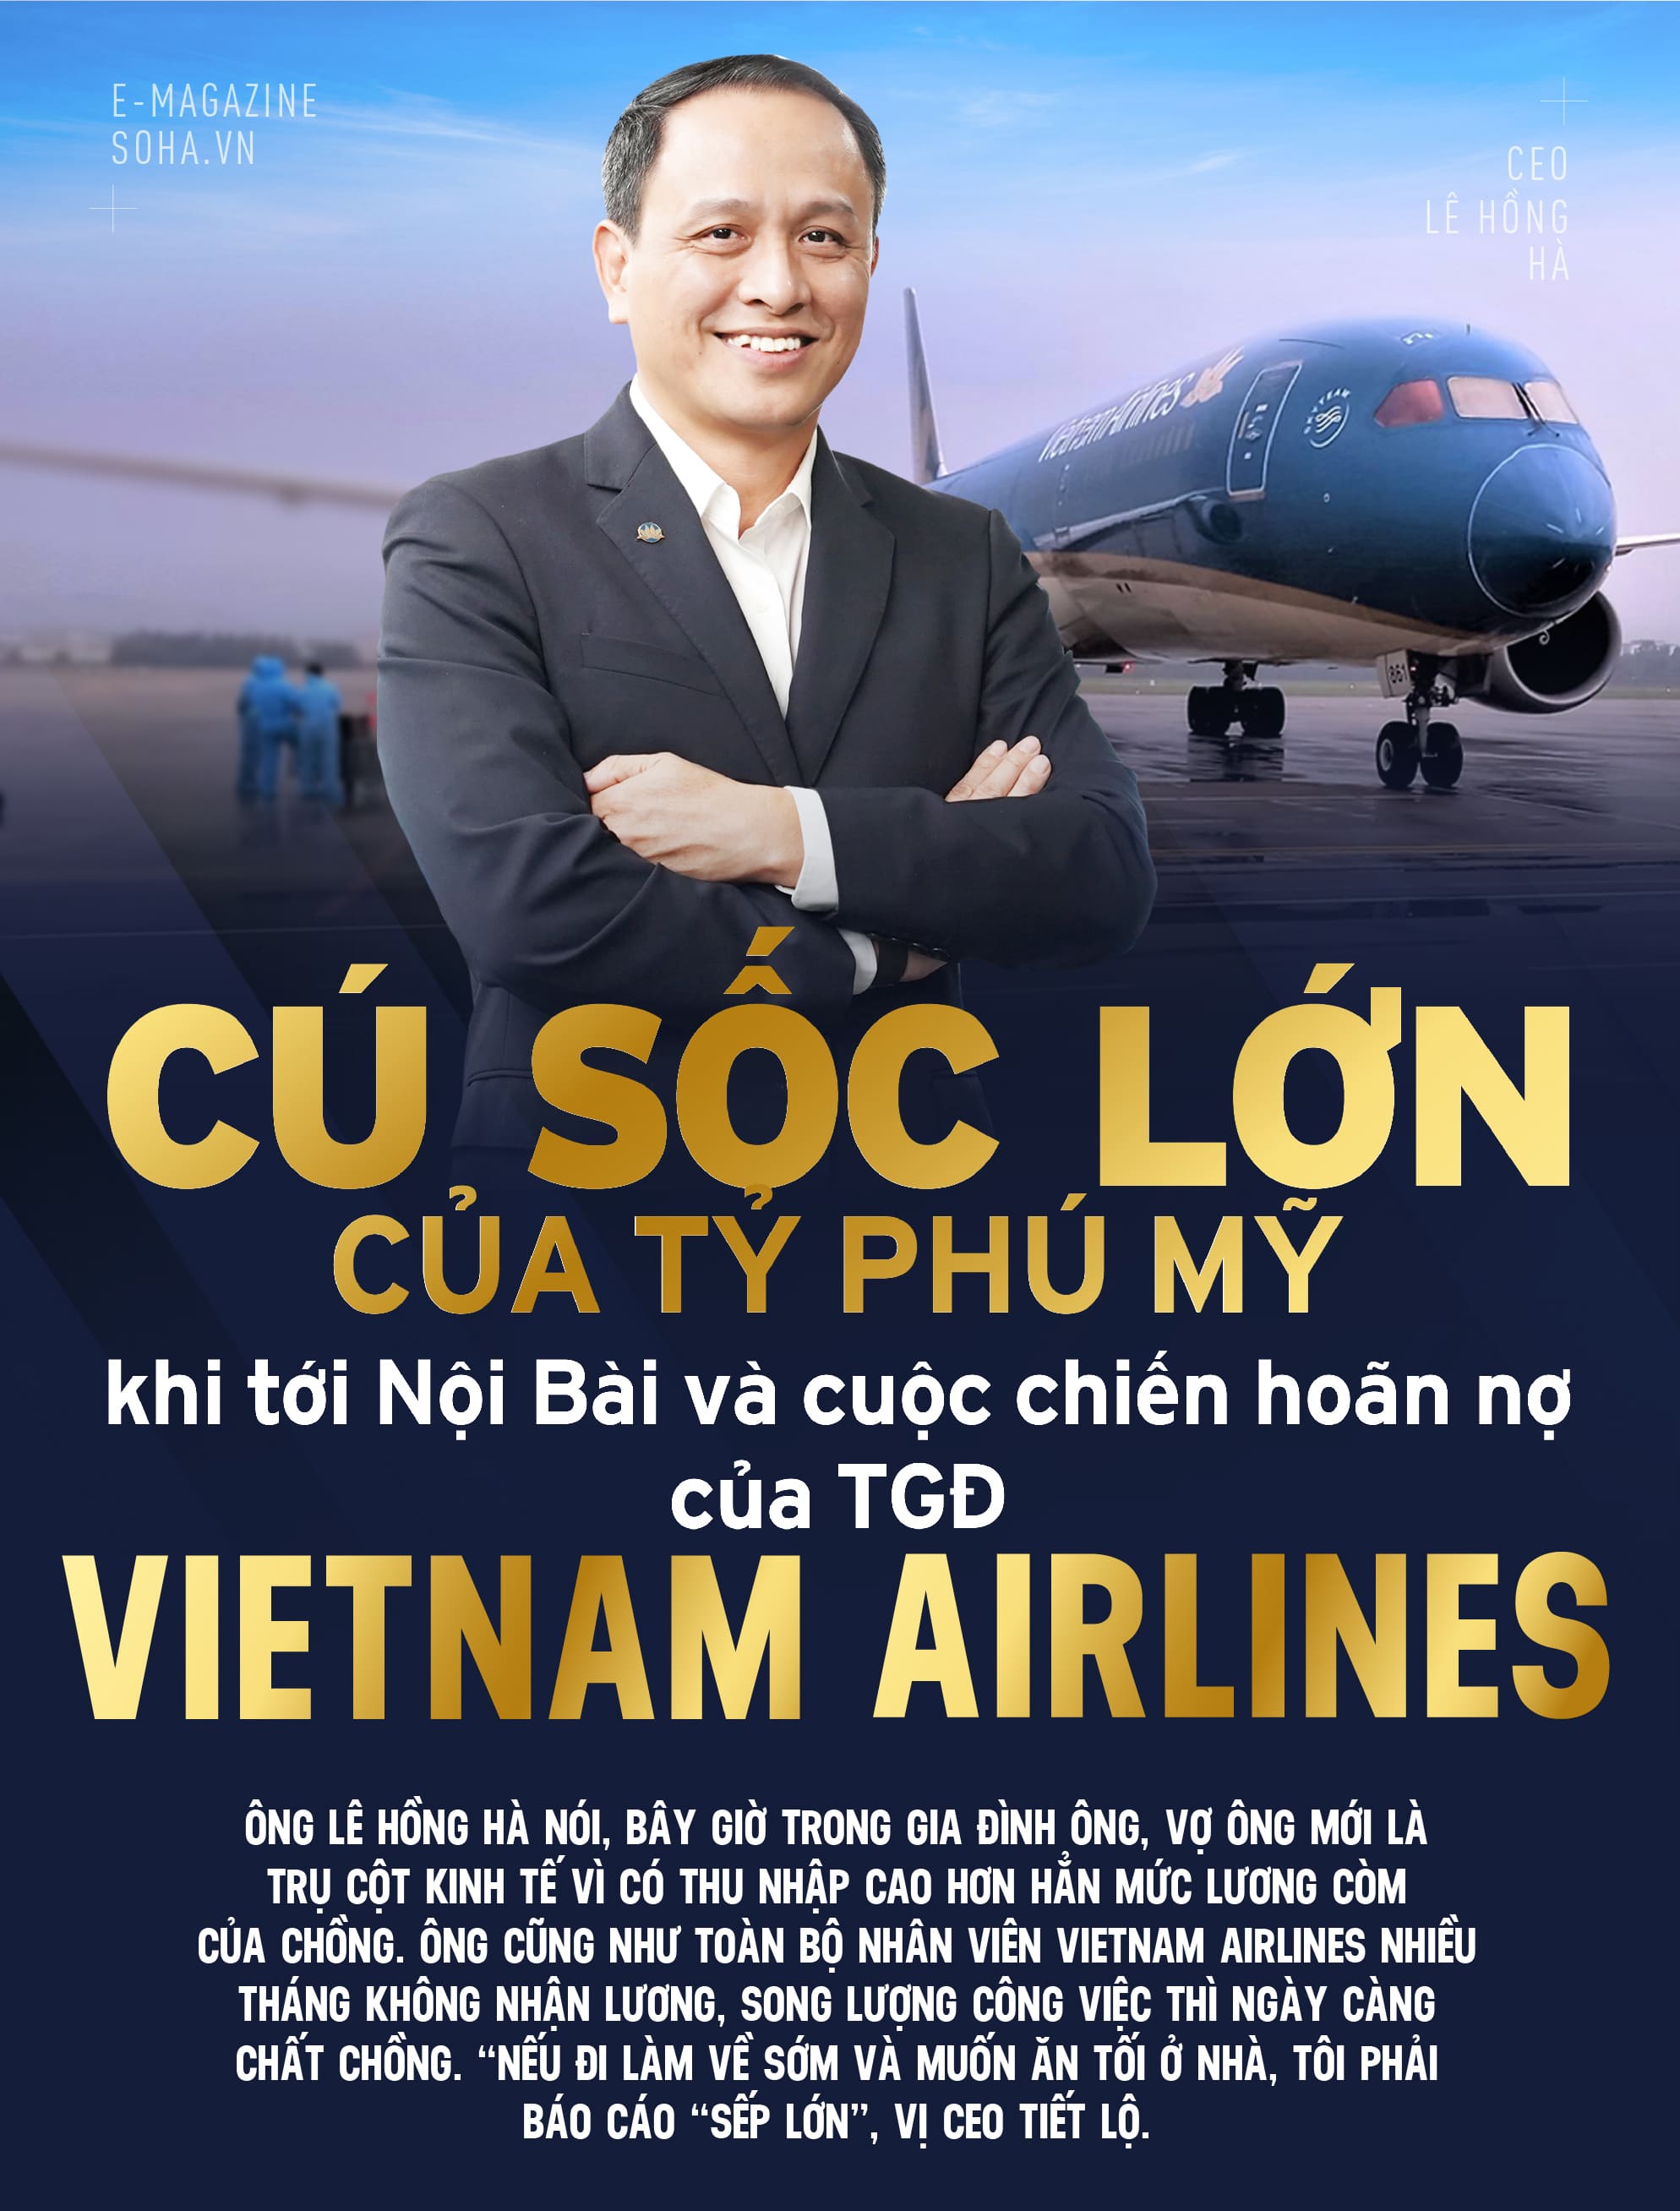 Ông Lê Hồng Hà (CEO Vietnam Airlines)